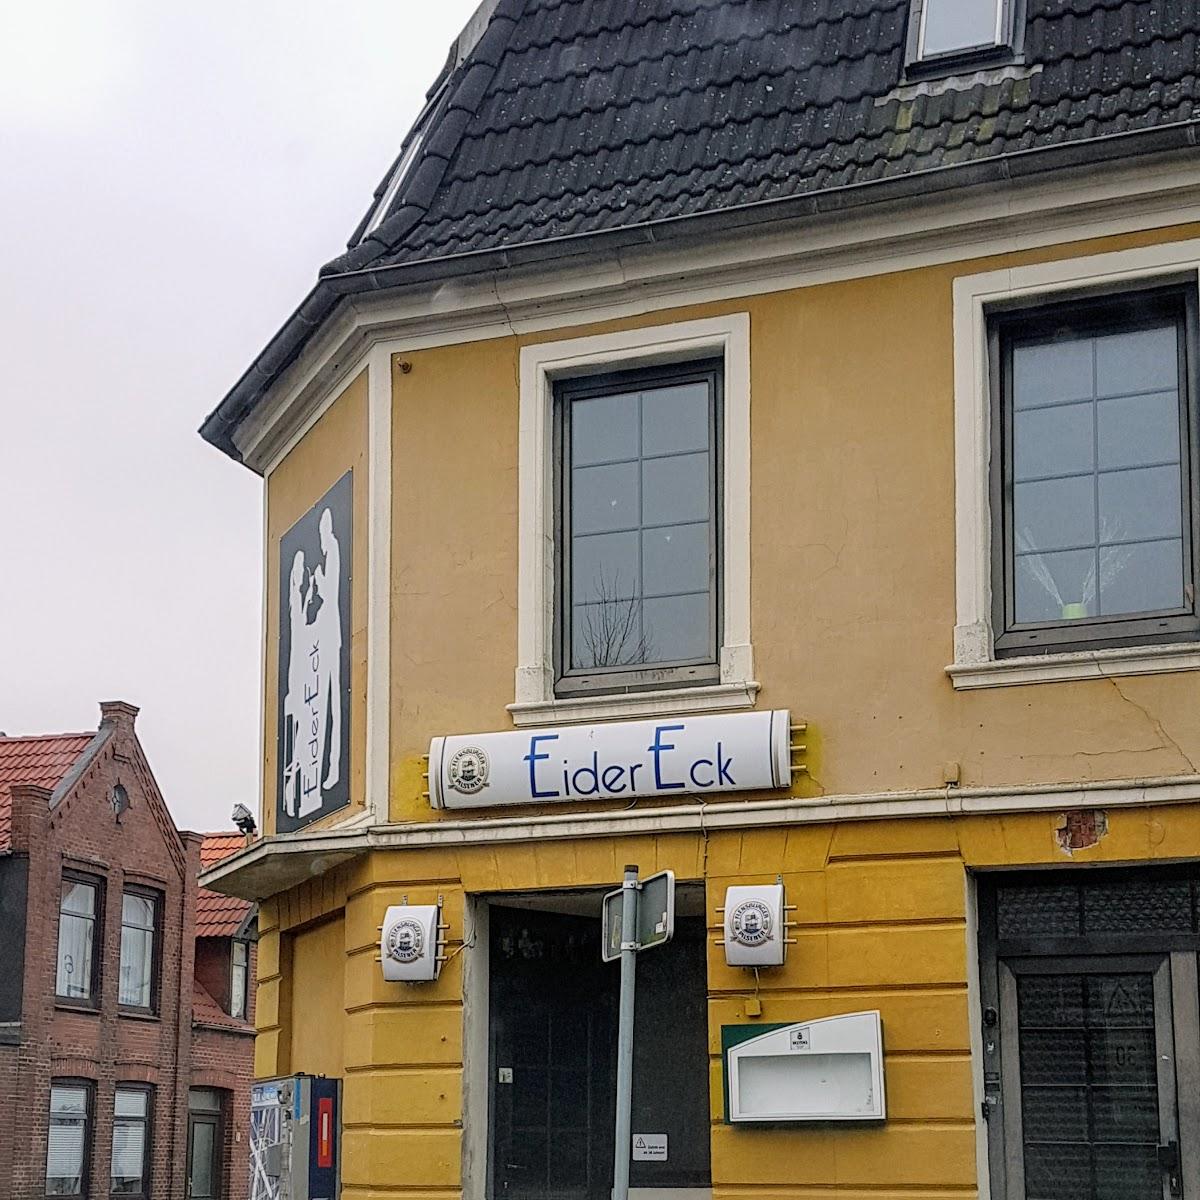 Restaurant "EiderEck" in Tönning